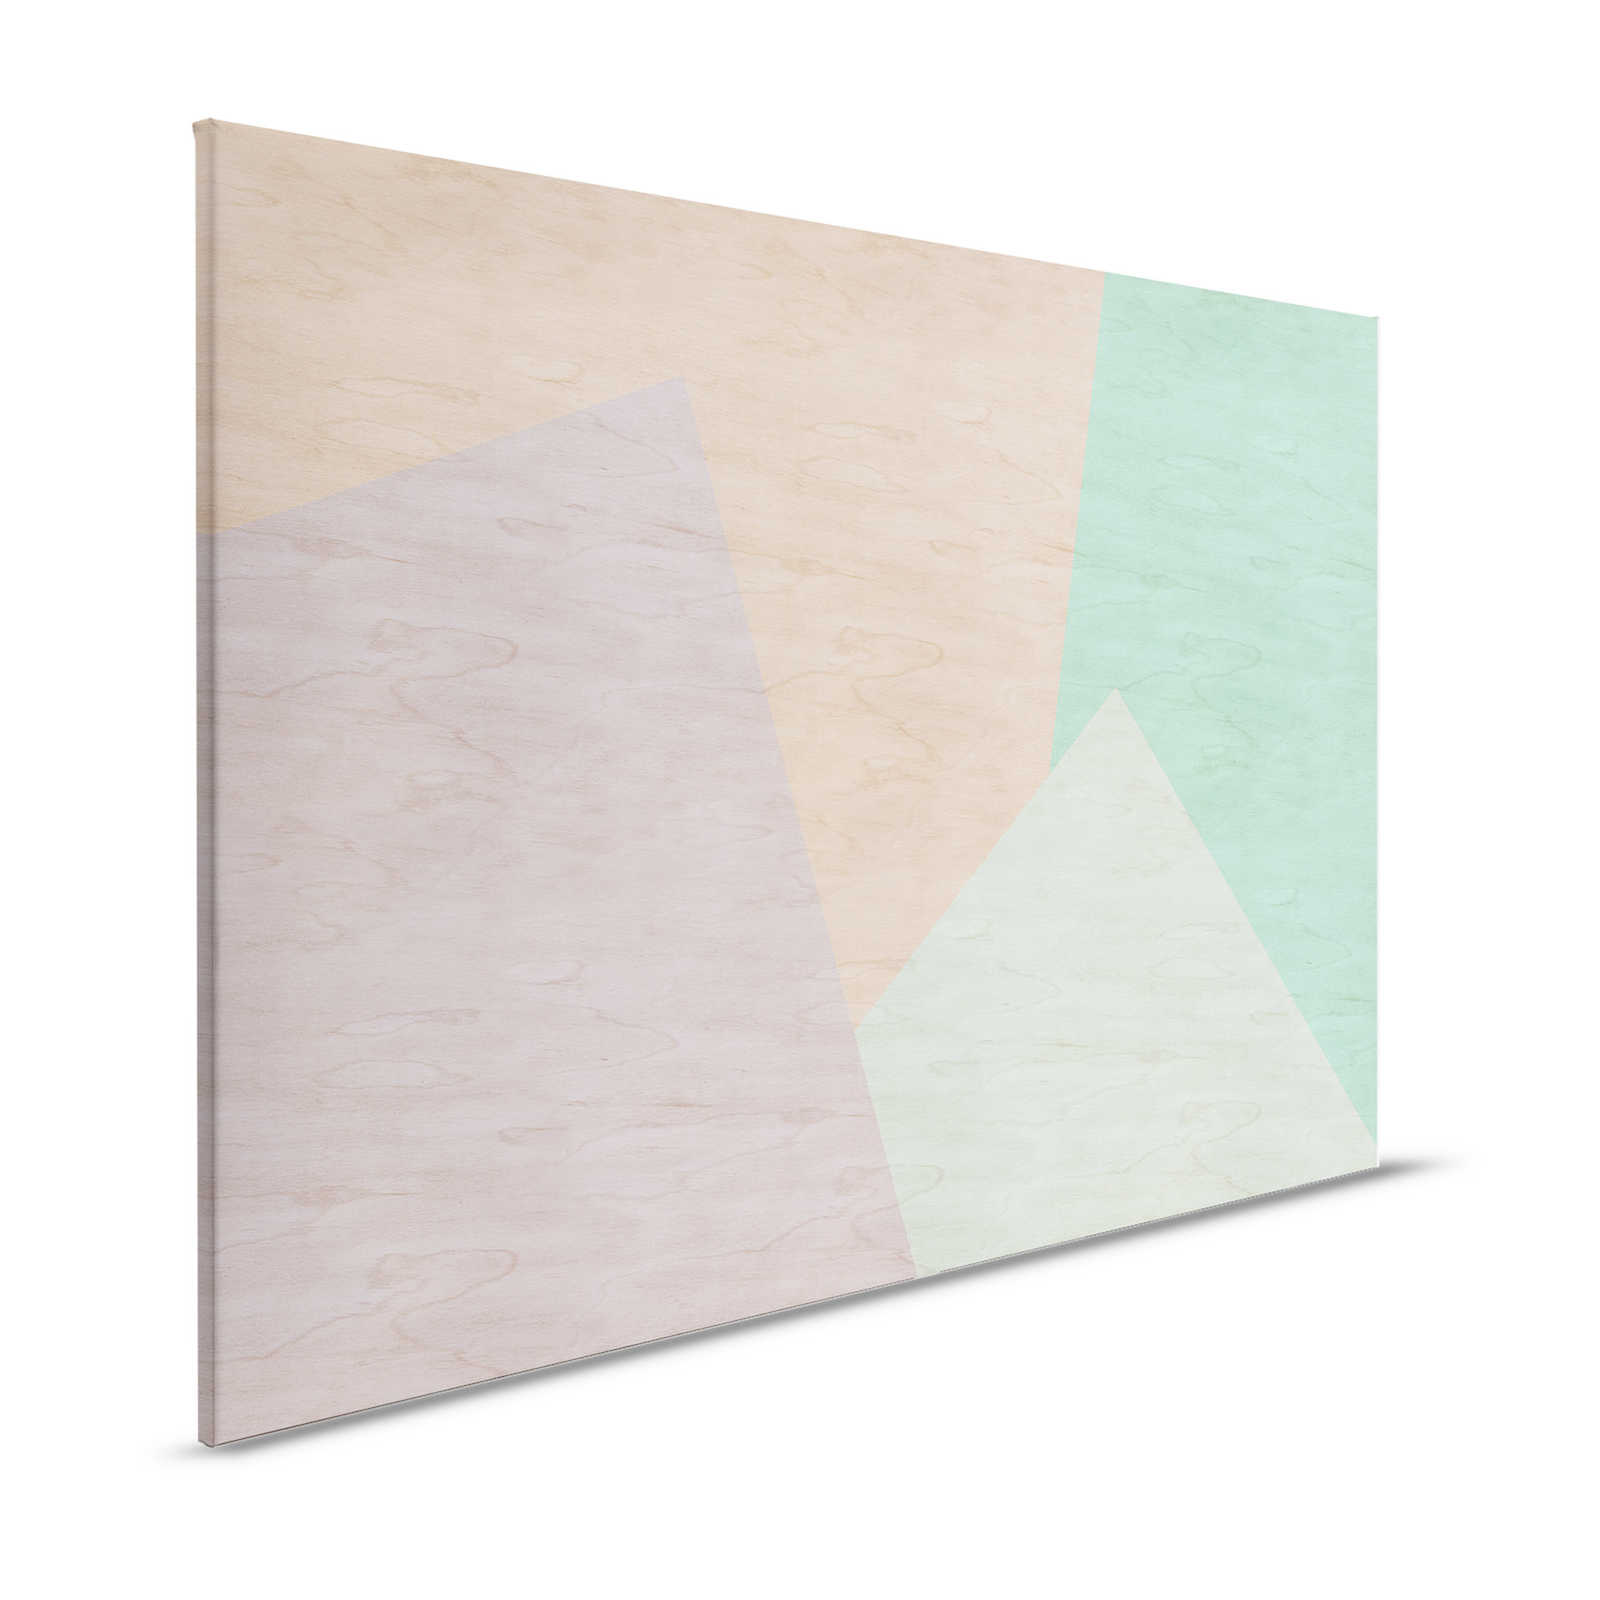 Inaly 1 - Abstract, kleurrijk canvas schilderij in multiplex look - 1.20 m x 0.80 m
